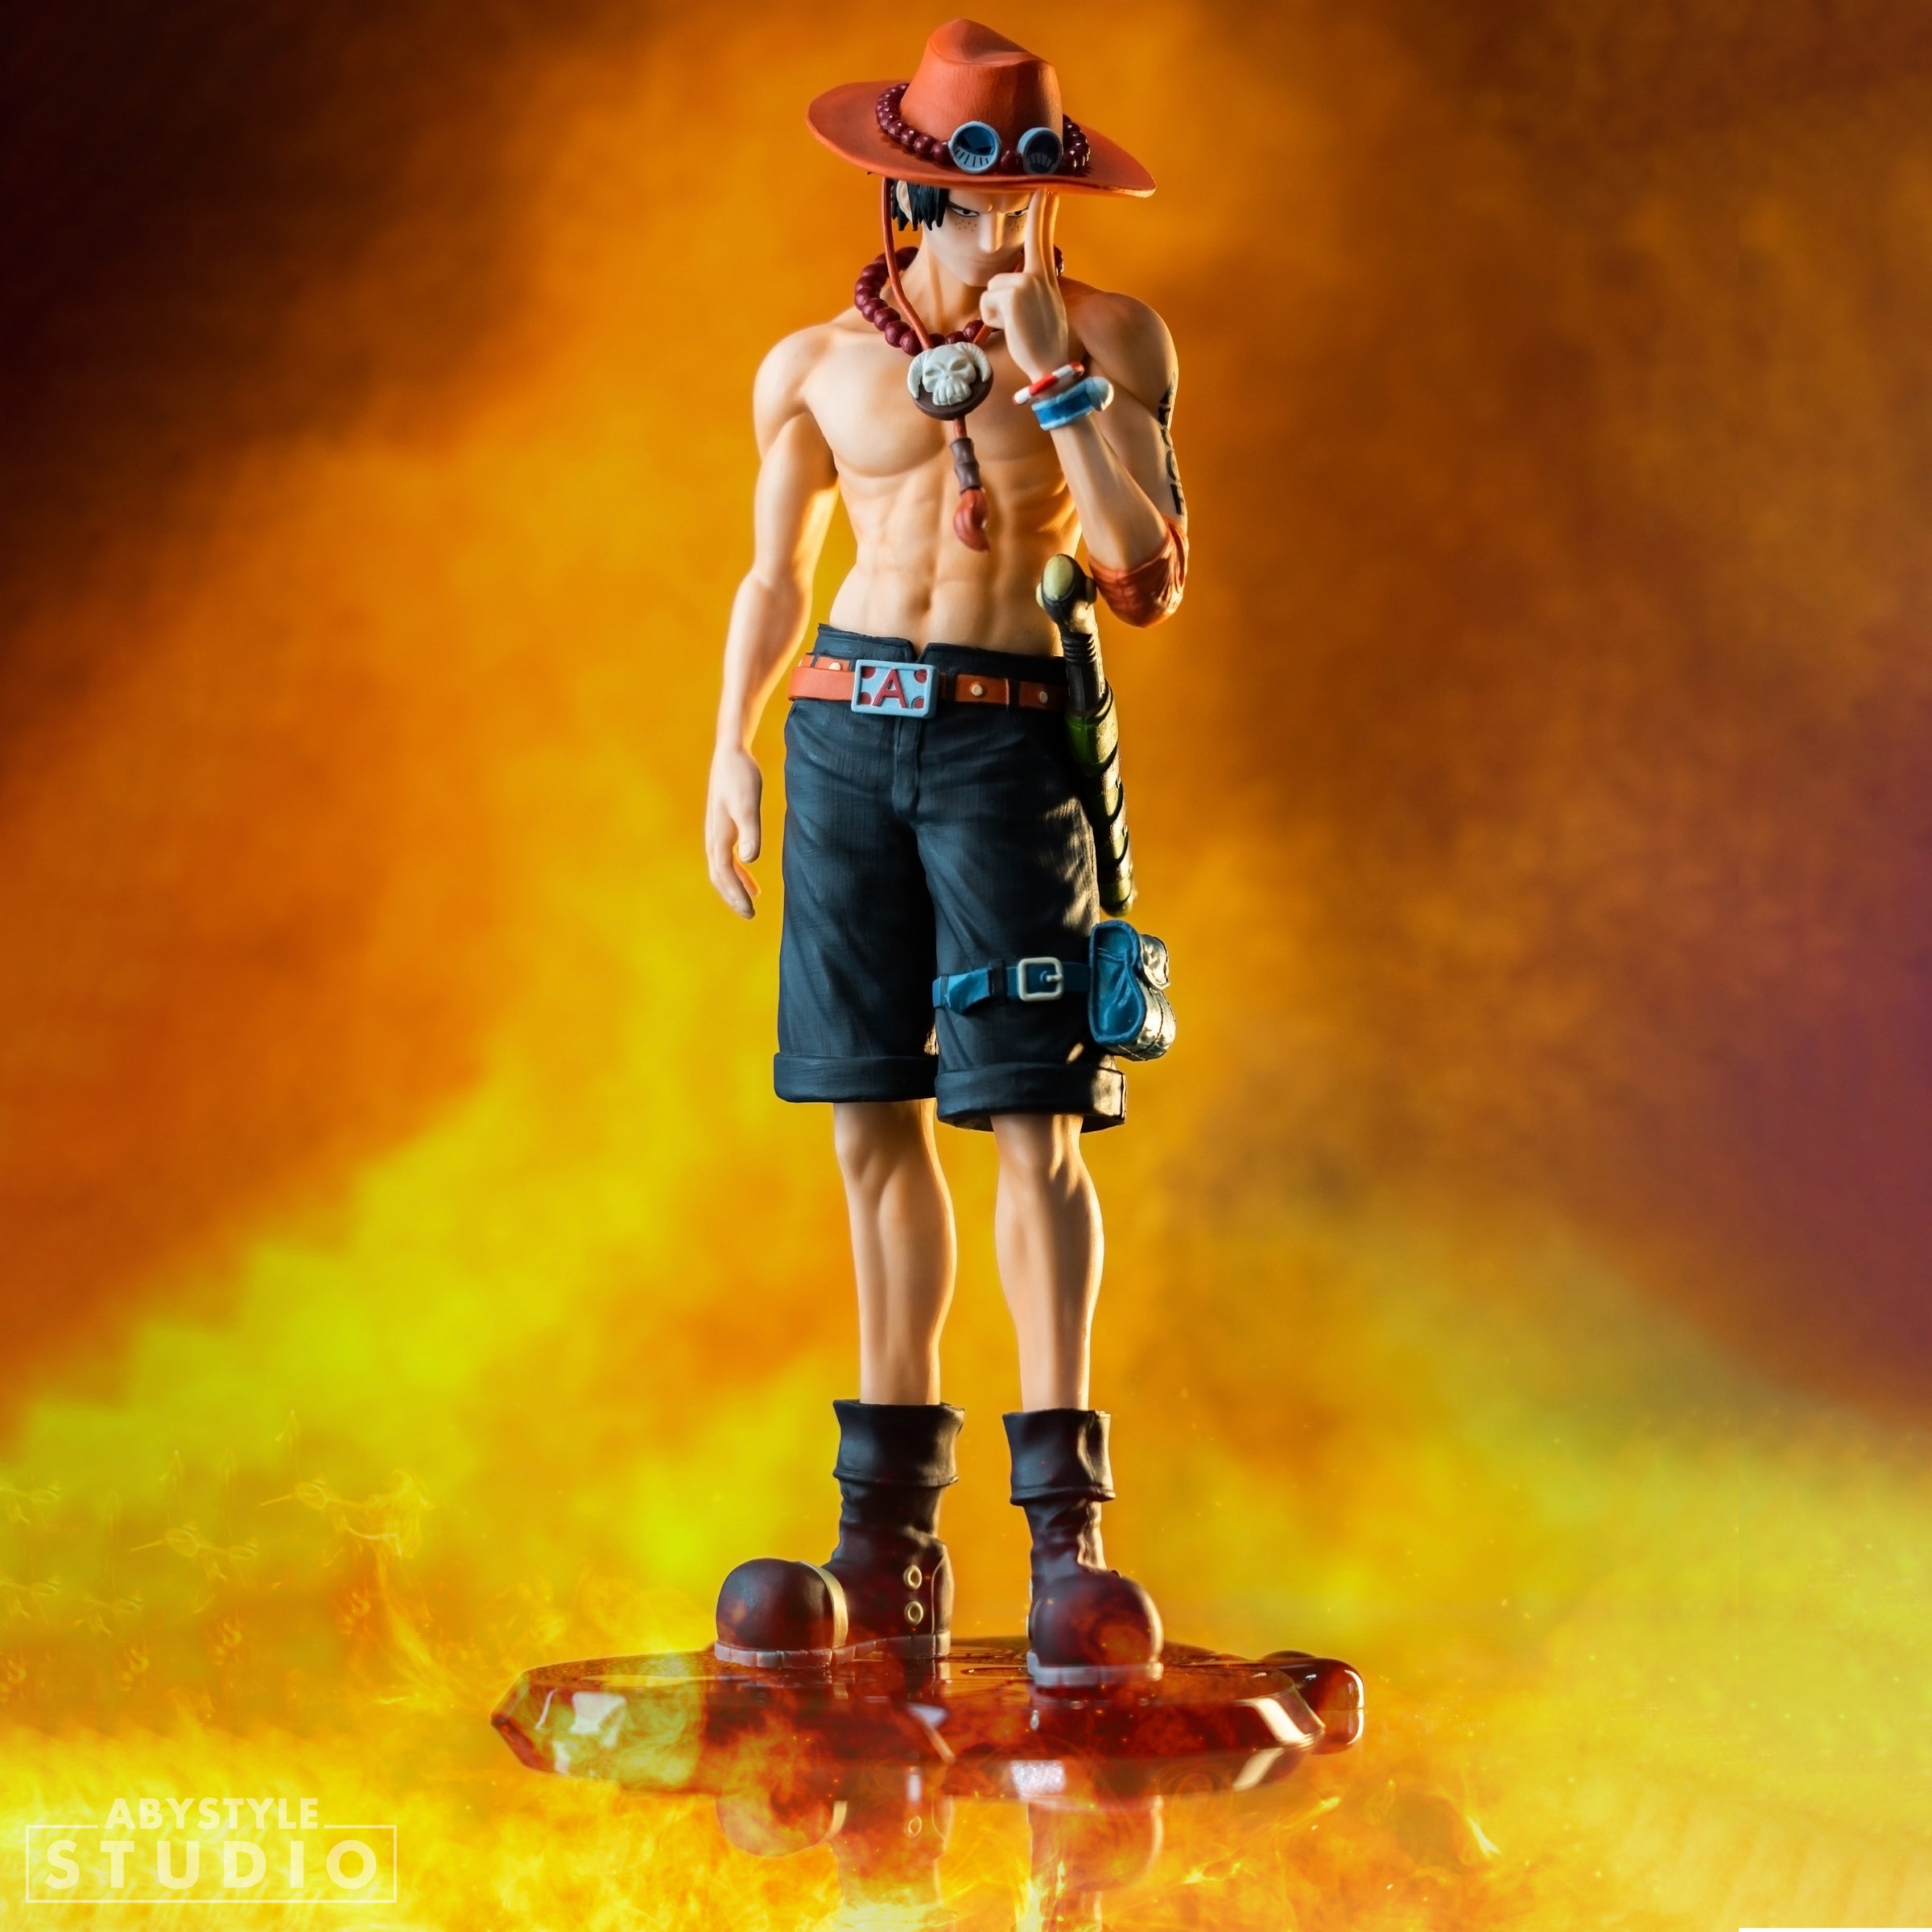 One Piece Portgas D. Ace Figure